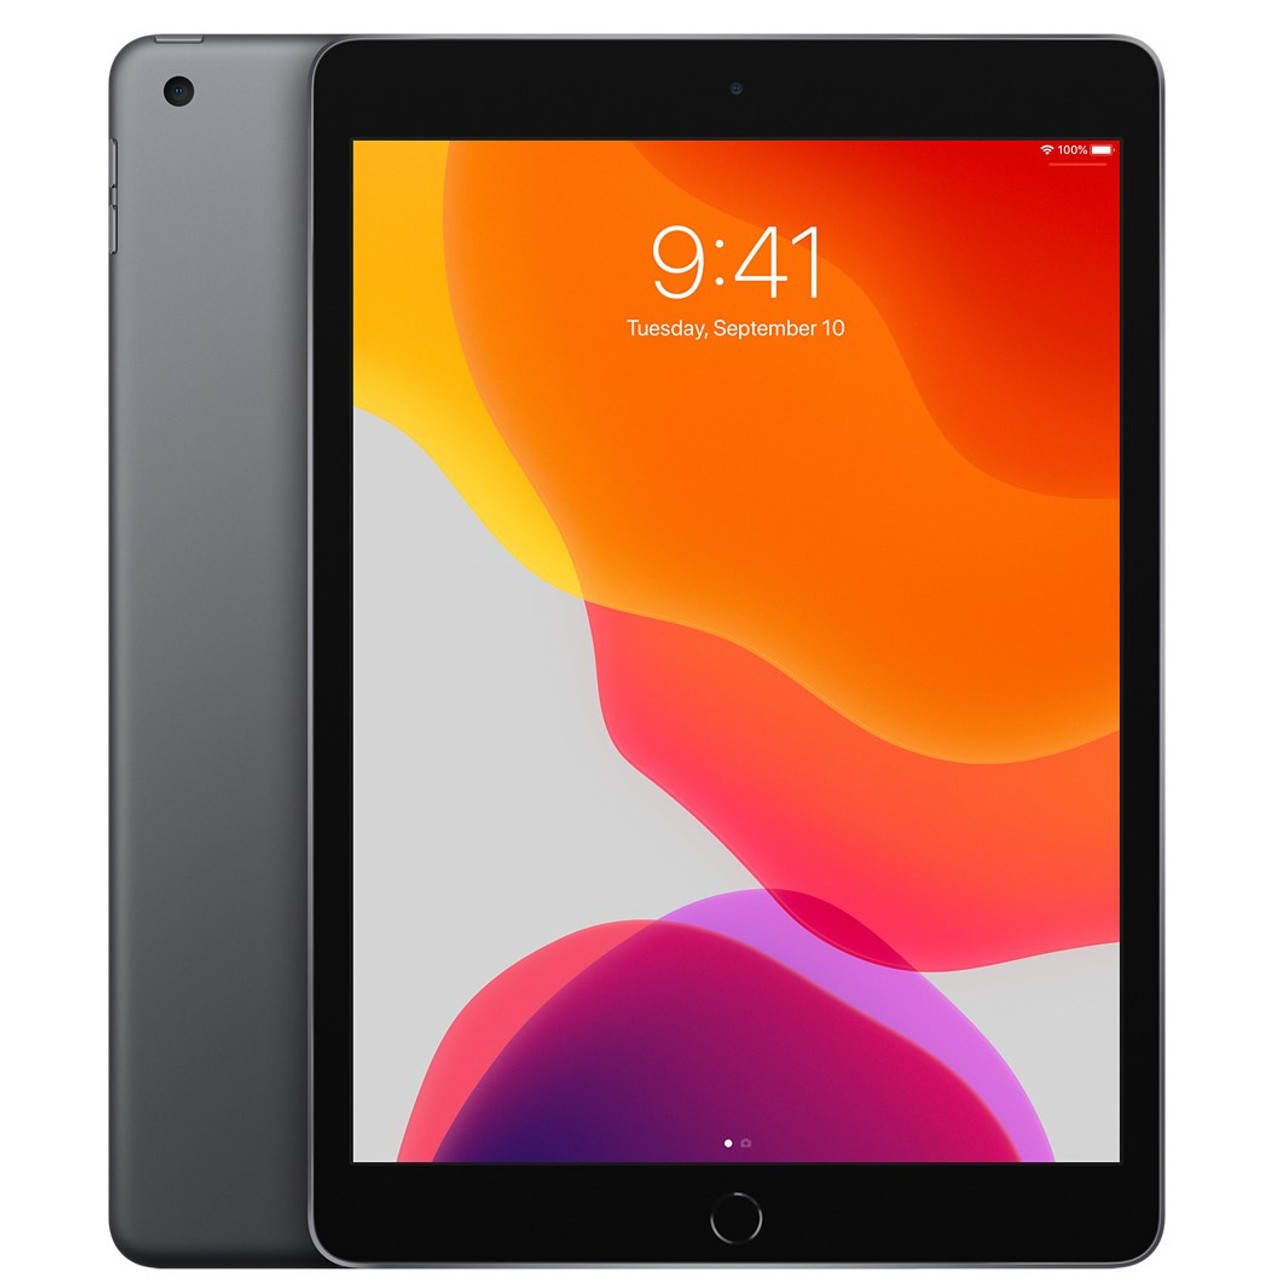 Apple iPad 7th Gen 10.2" MW742LL/A - 32 GB, WiFi, Space Gray - New